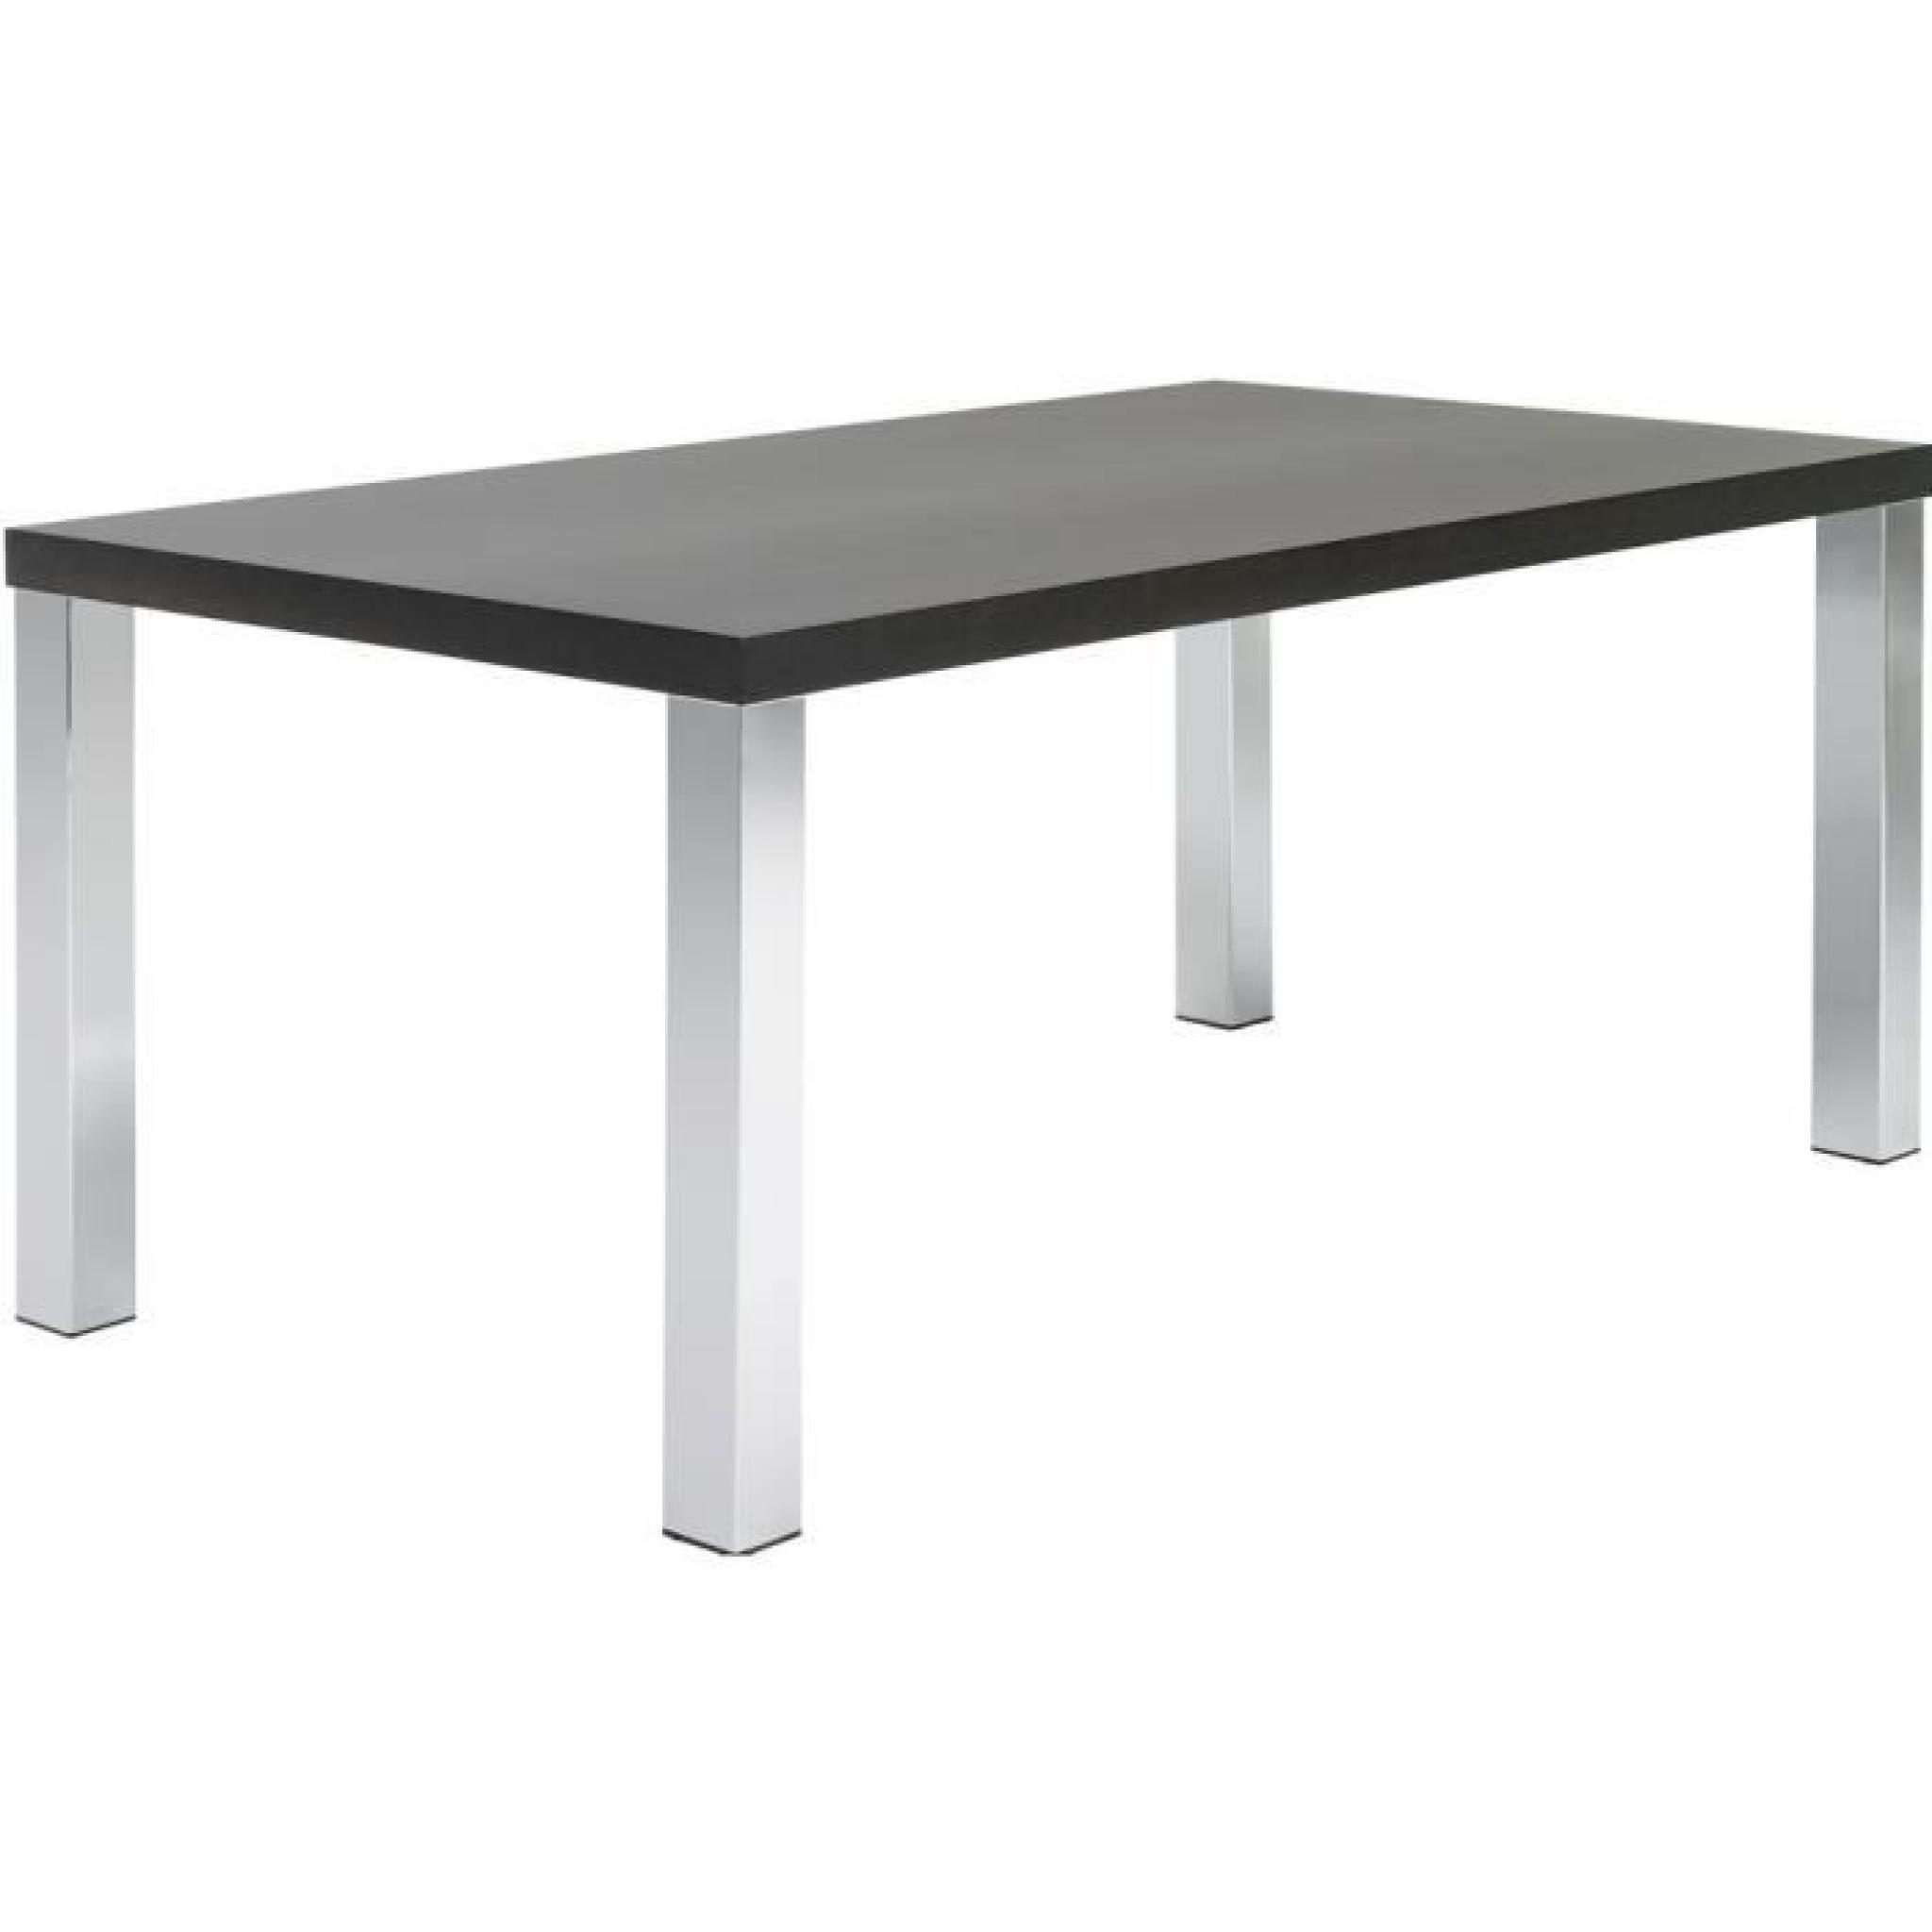 Table rectangulaire 200 cm wengué avec pieds chromés Kate Couleur Wengue texturé Matière. Panneaux de particules pas cher